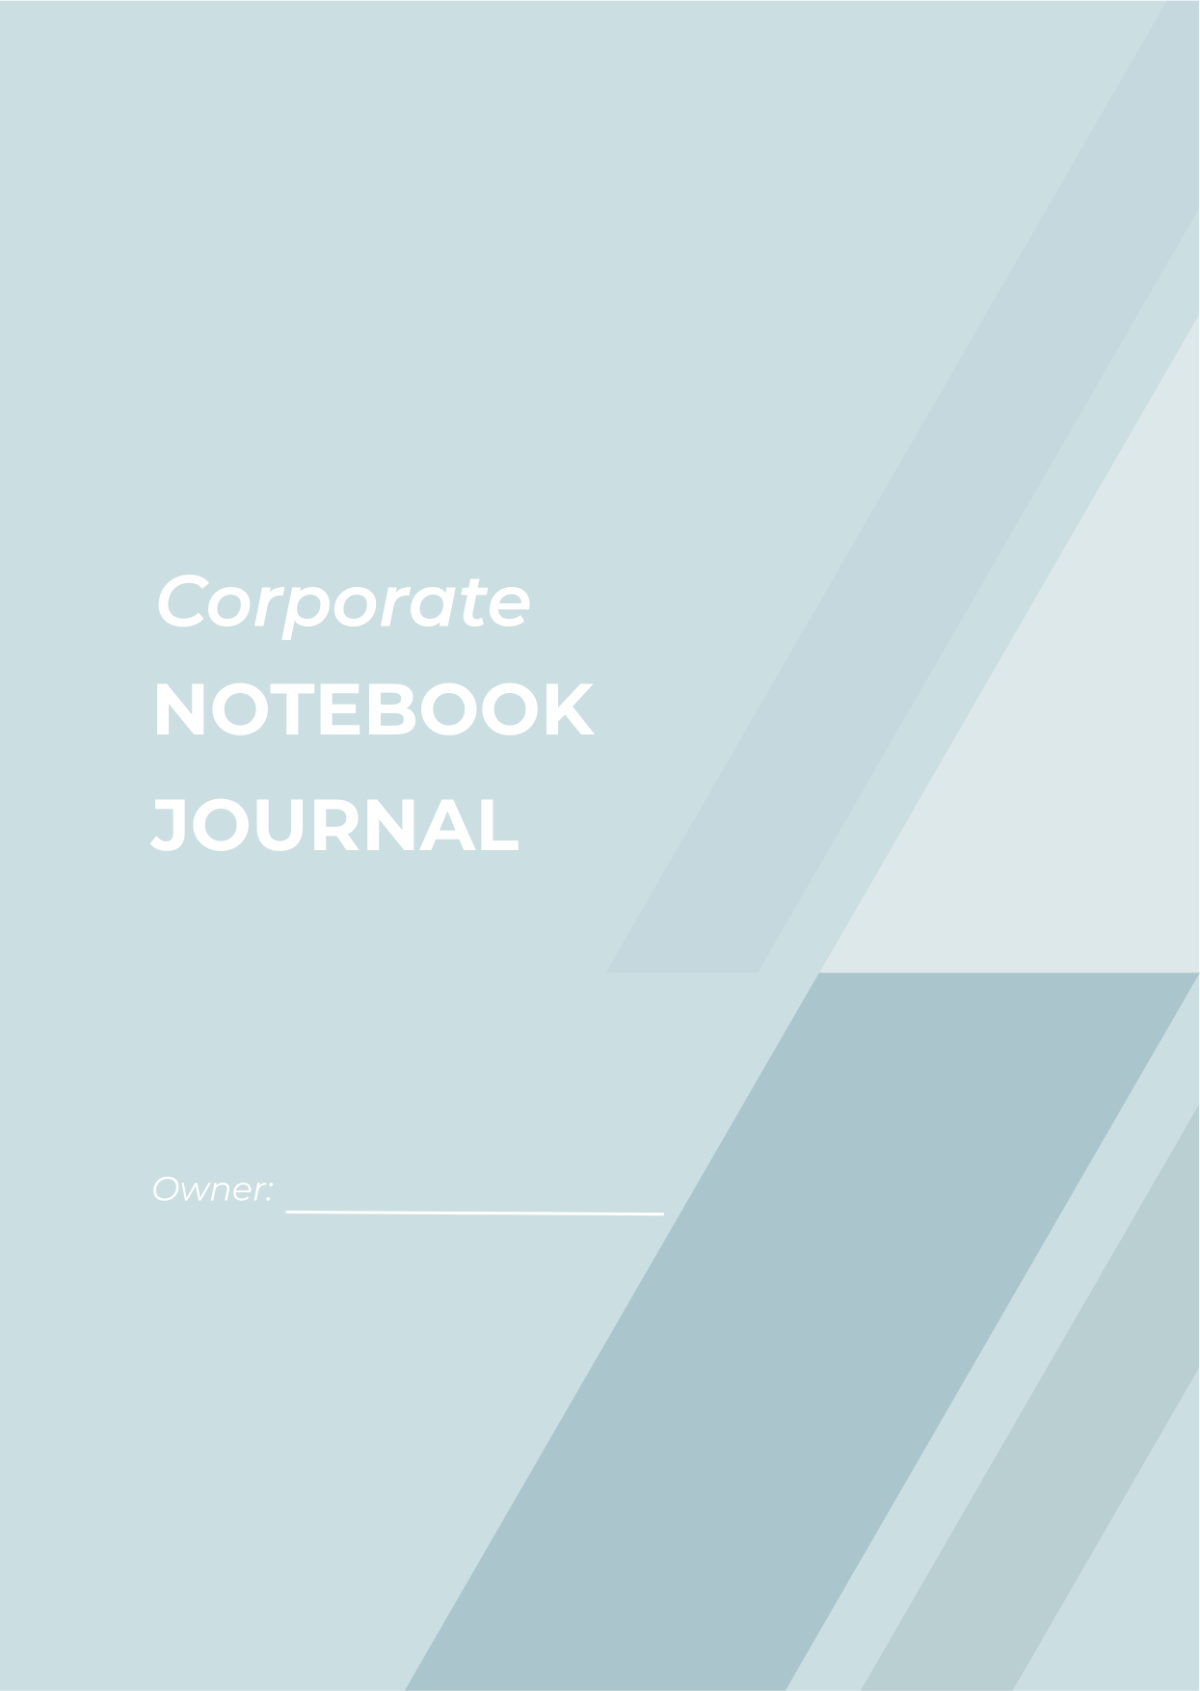 Corporate Notebook Journals